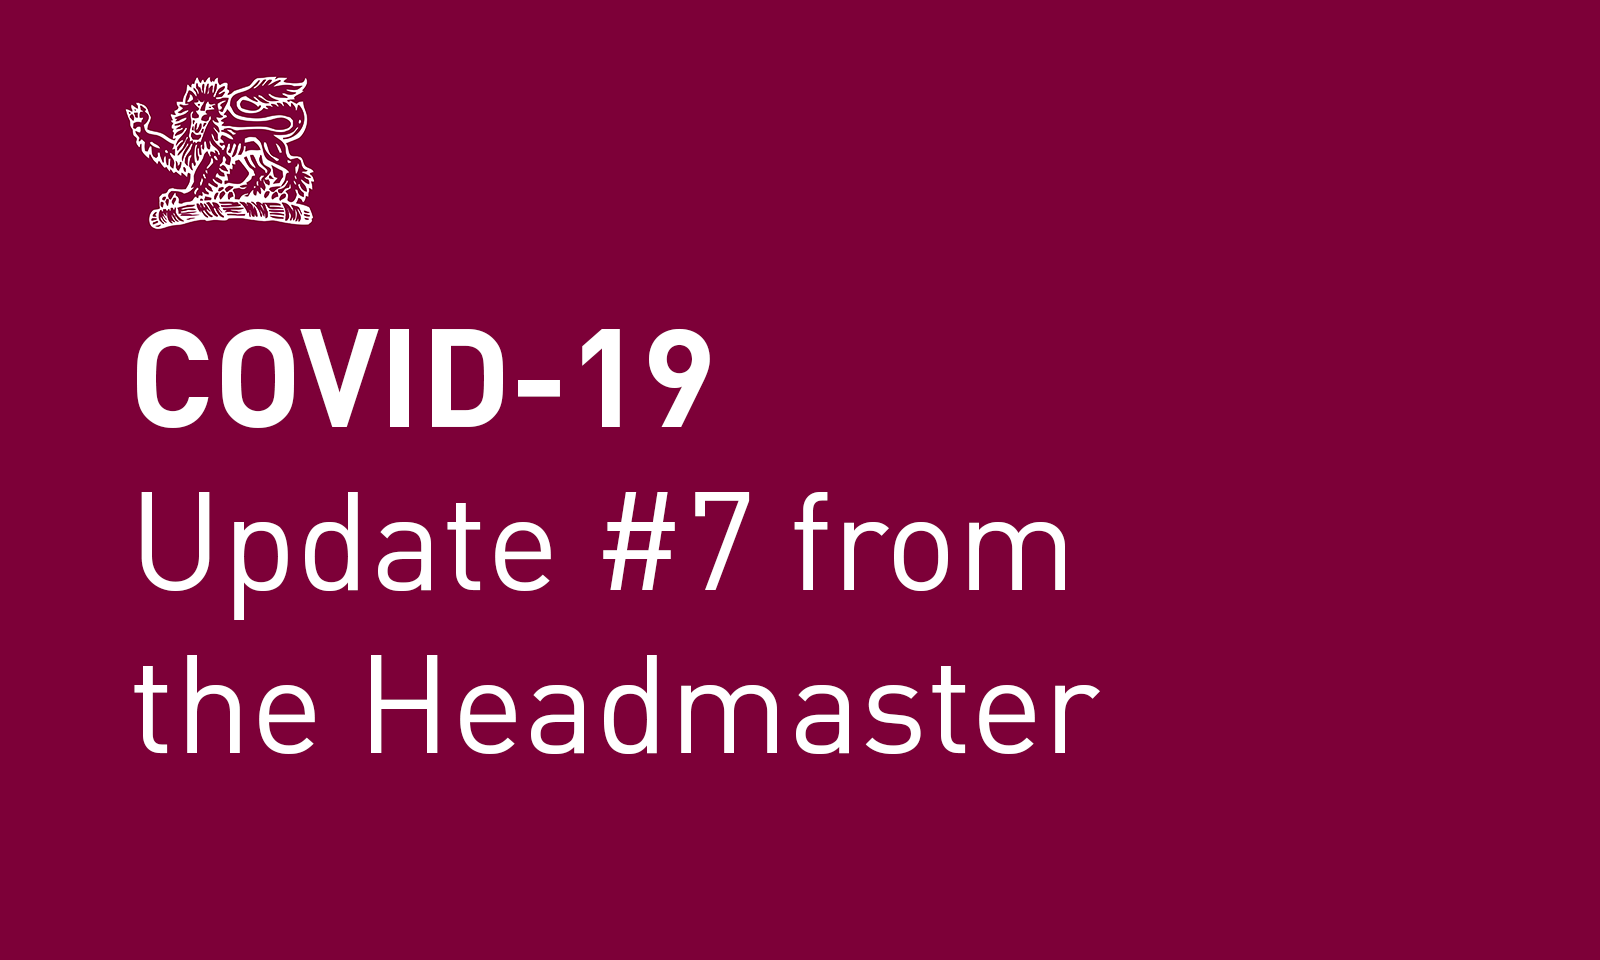 Coronavirus (COVID-19) update #7 from the Headmaster